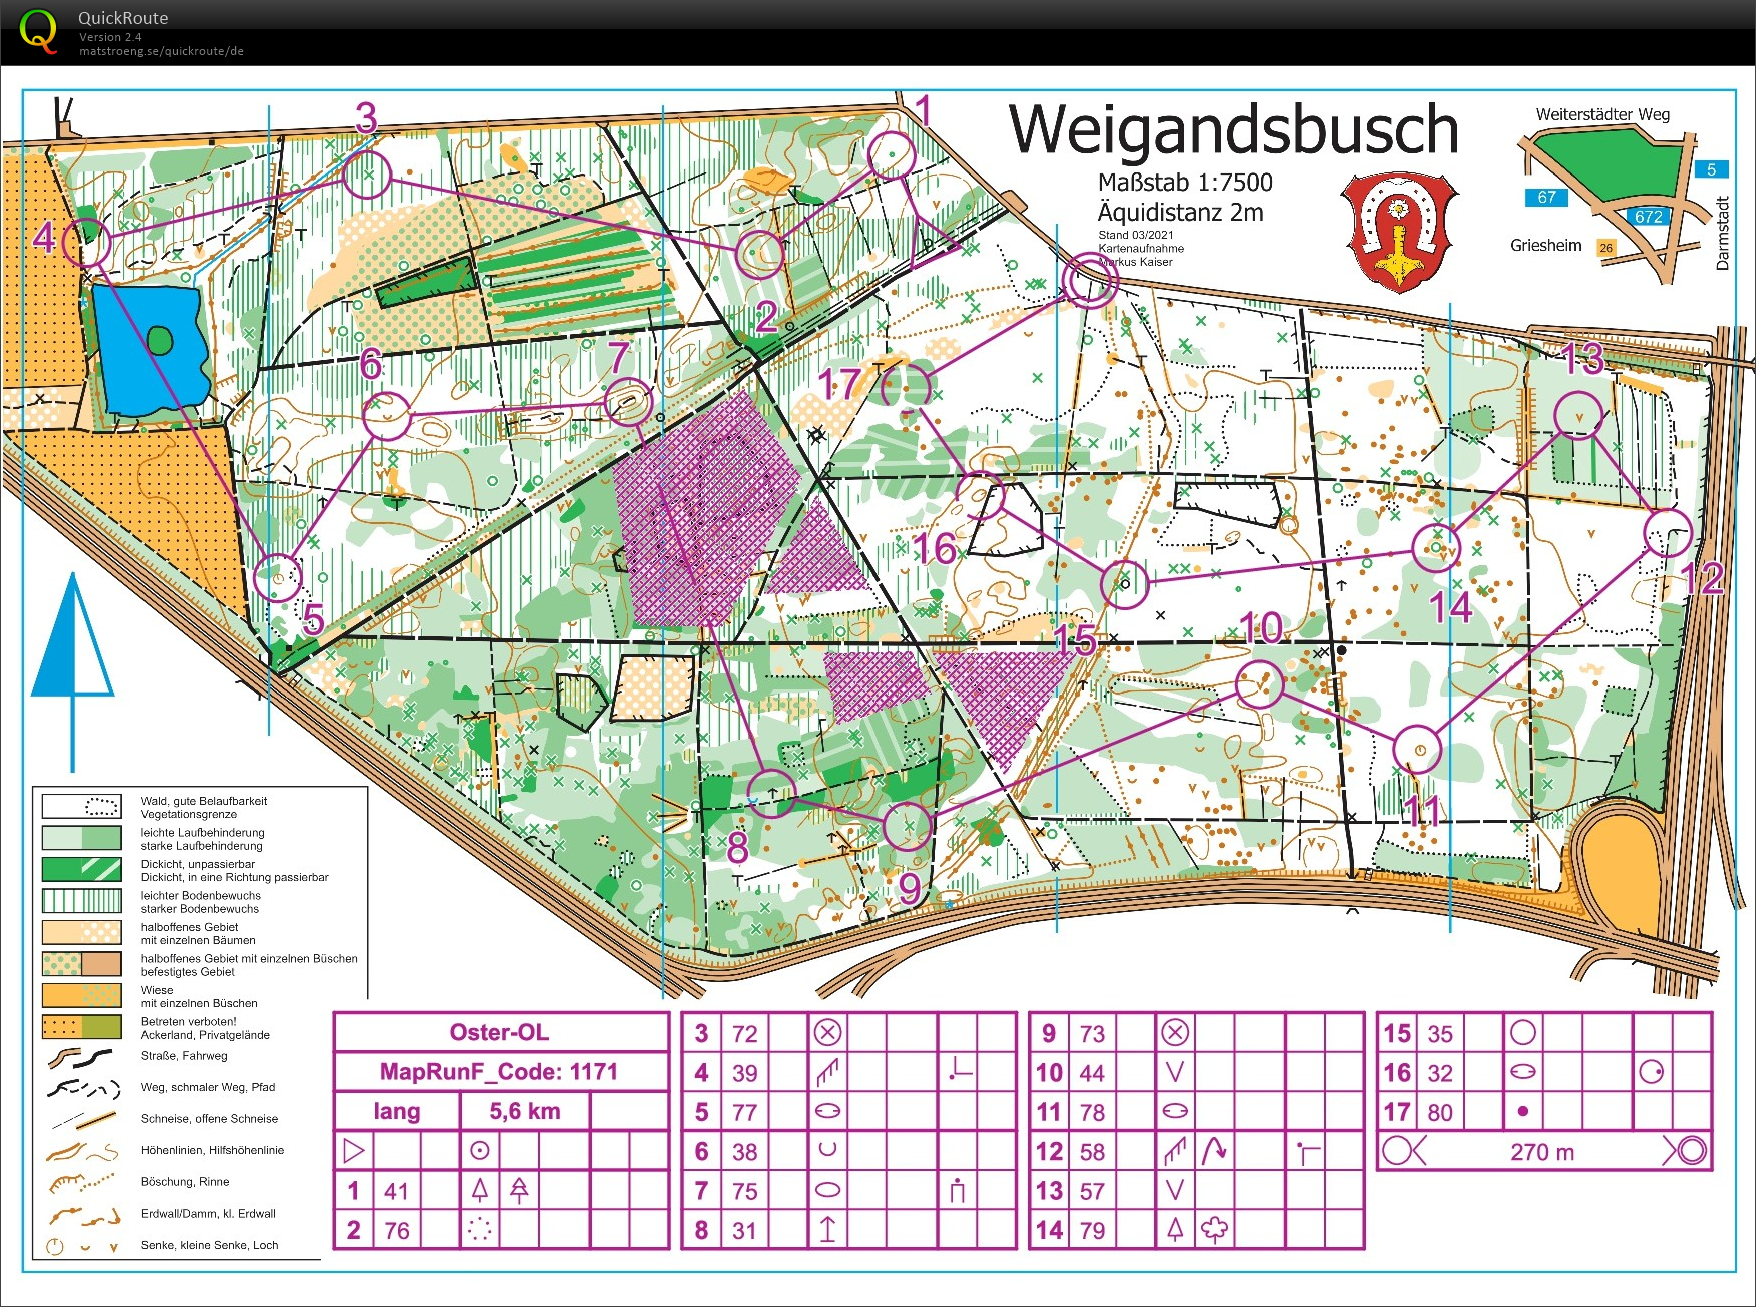 Training Weigandsbusch (2021-05-09)